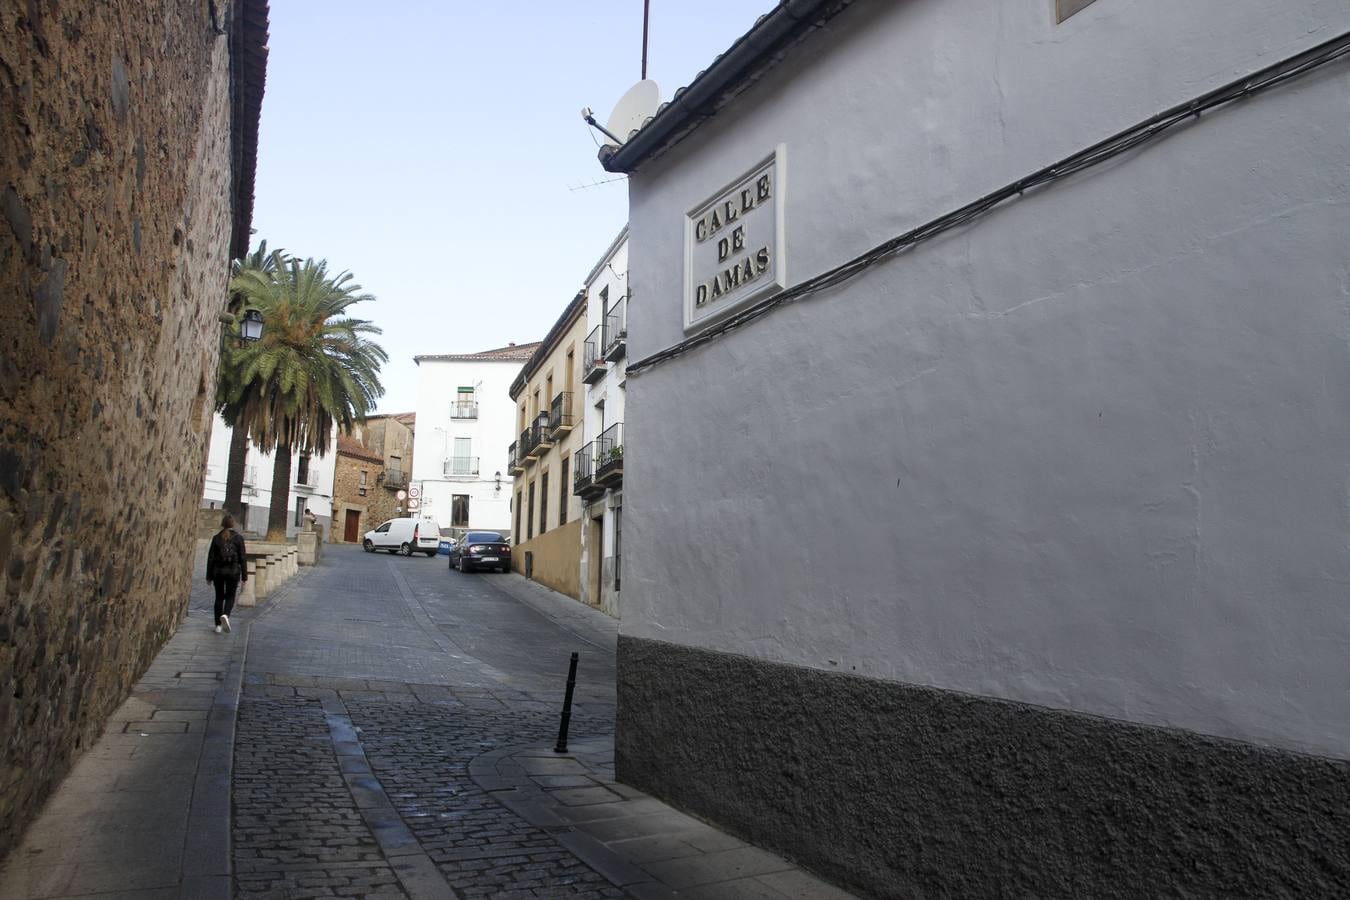 3-Calle Damas, lugar en el que vivieron las prostitutas en tiempos de Isabel La Católica